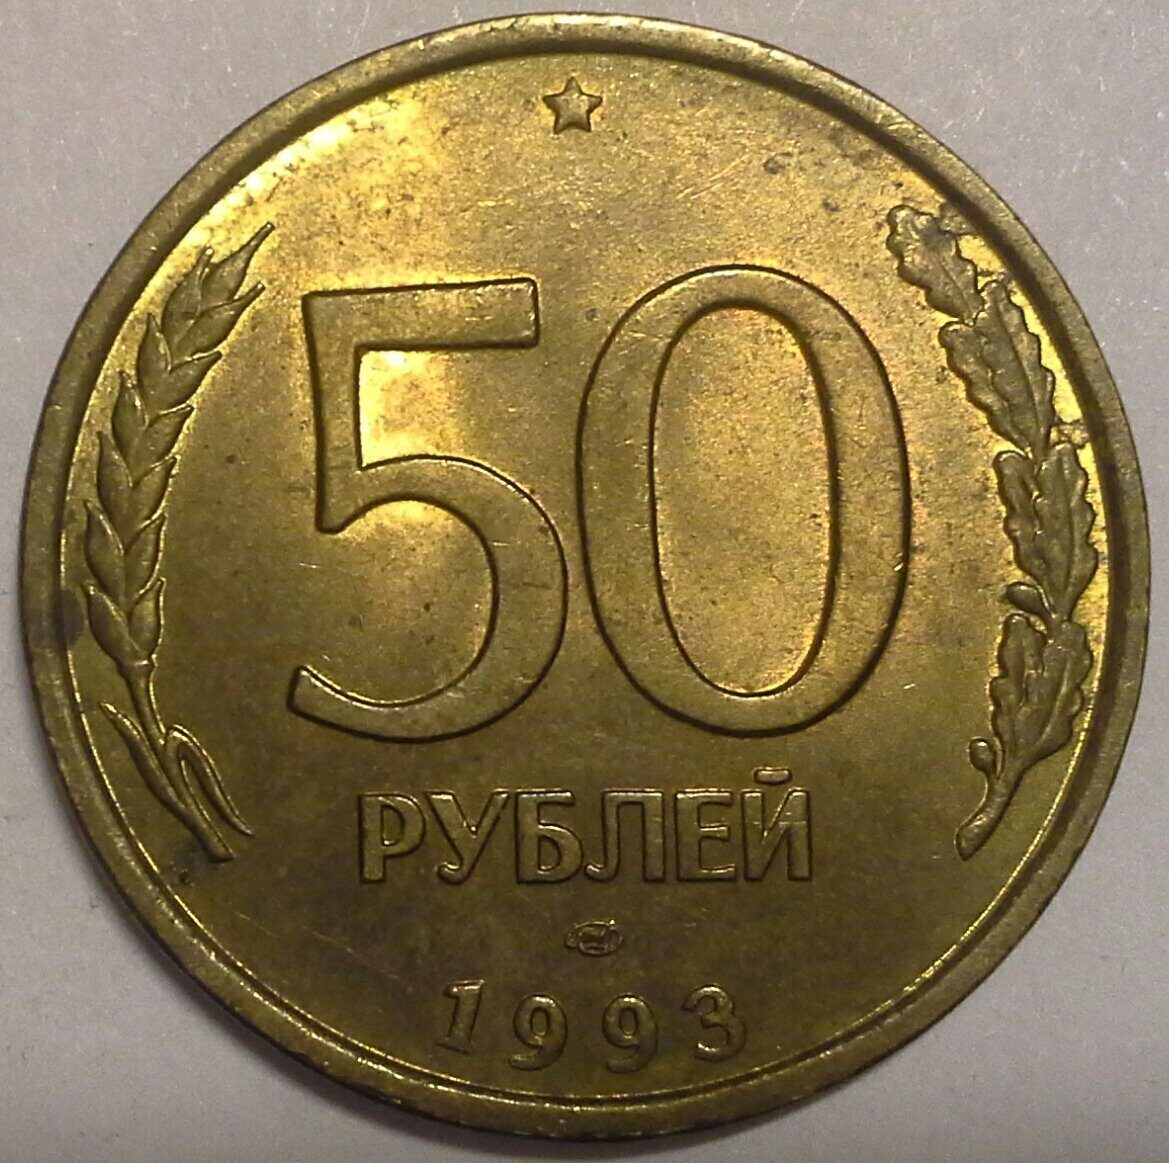 Пятьдесят руб. 50 Рублей 1993 года. 50 Р монета. 50 Рублей металлические. 50 Рублей.